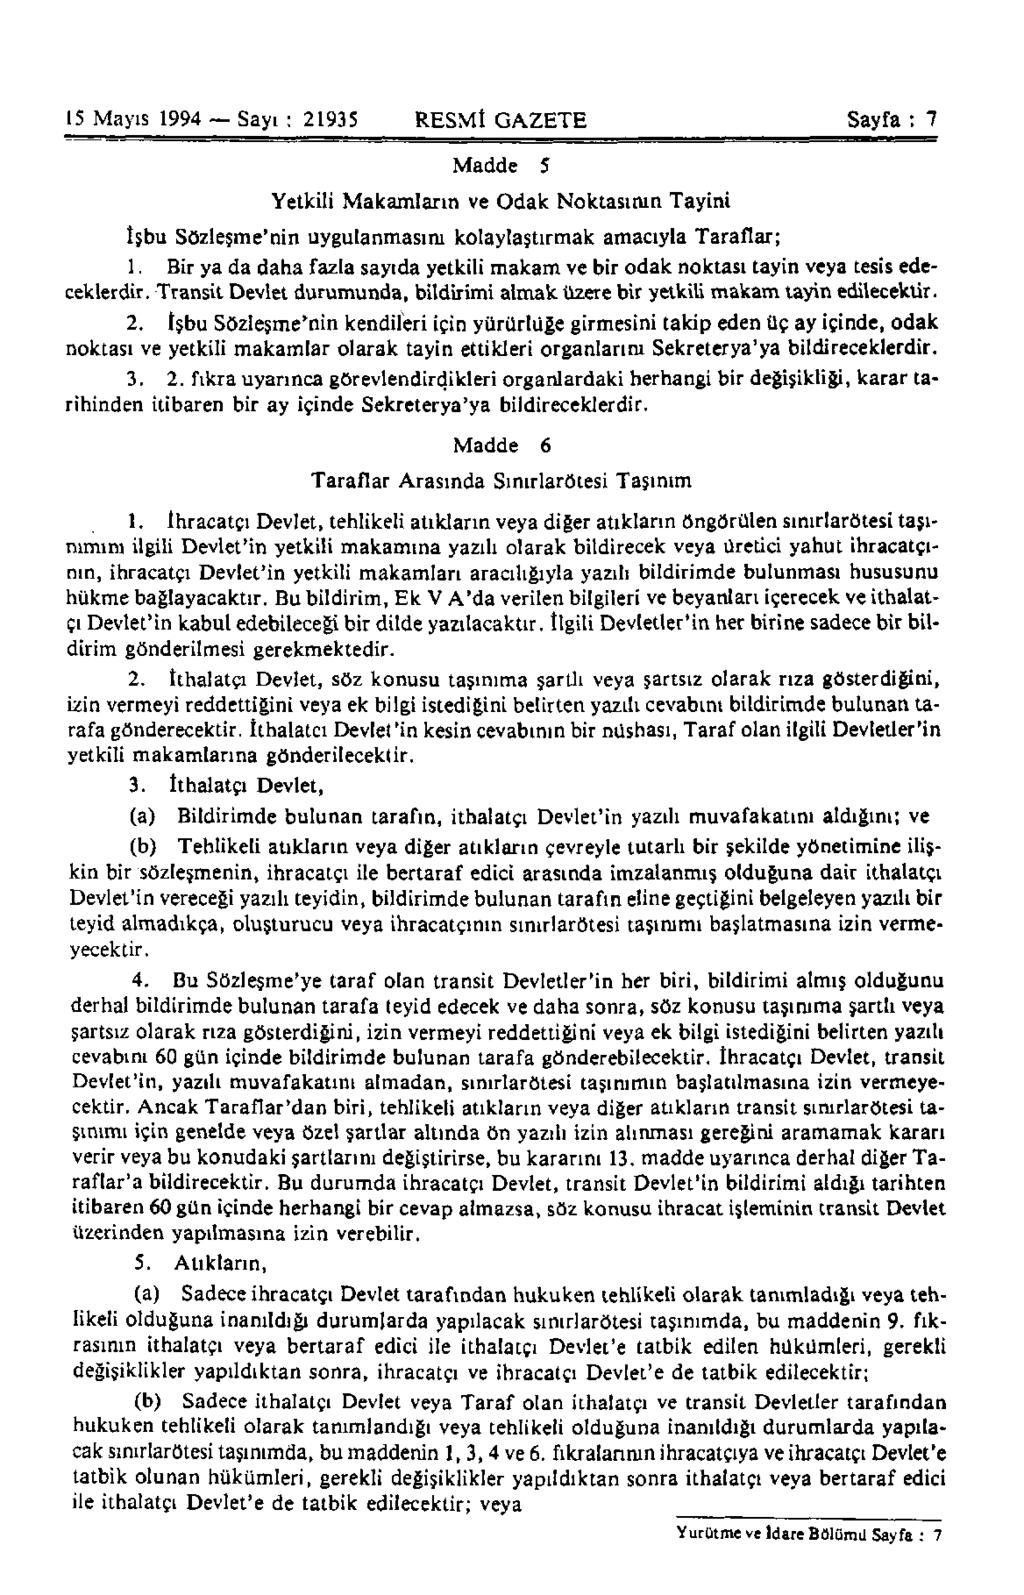 15 Mayıs 1994 Sayı : 21935 RESMİ GAZETE Sayfa : 7 Madde 5 Yetkili Makamların ve Odak Noktasının Tayini İşbu Sözleşme'nin uygulanmasını kolaylaştırmak amacıyla Taraflar; 1.